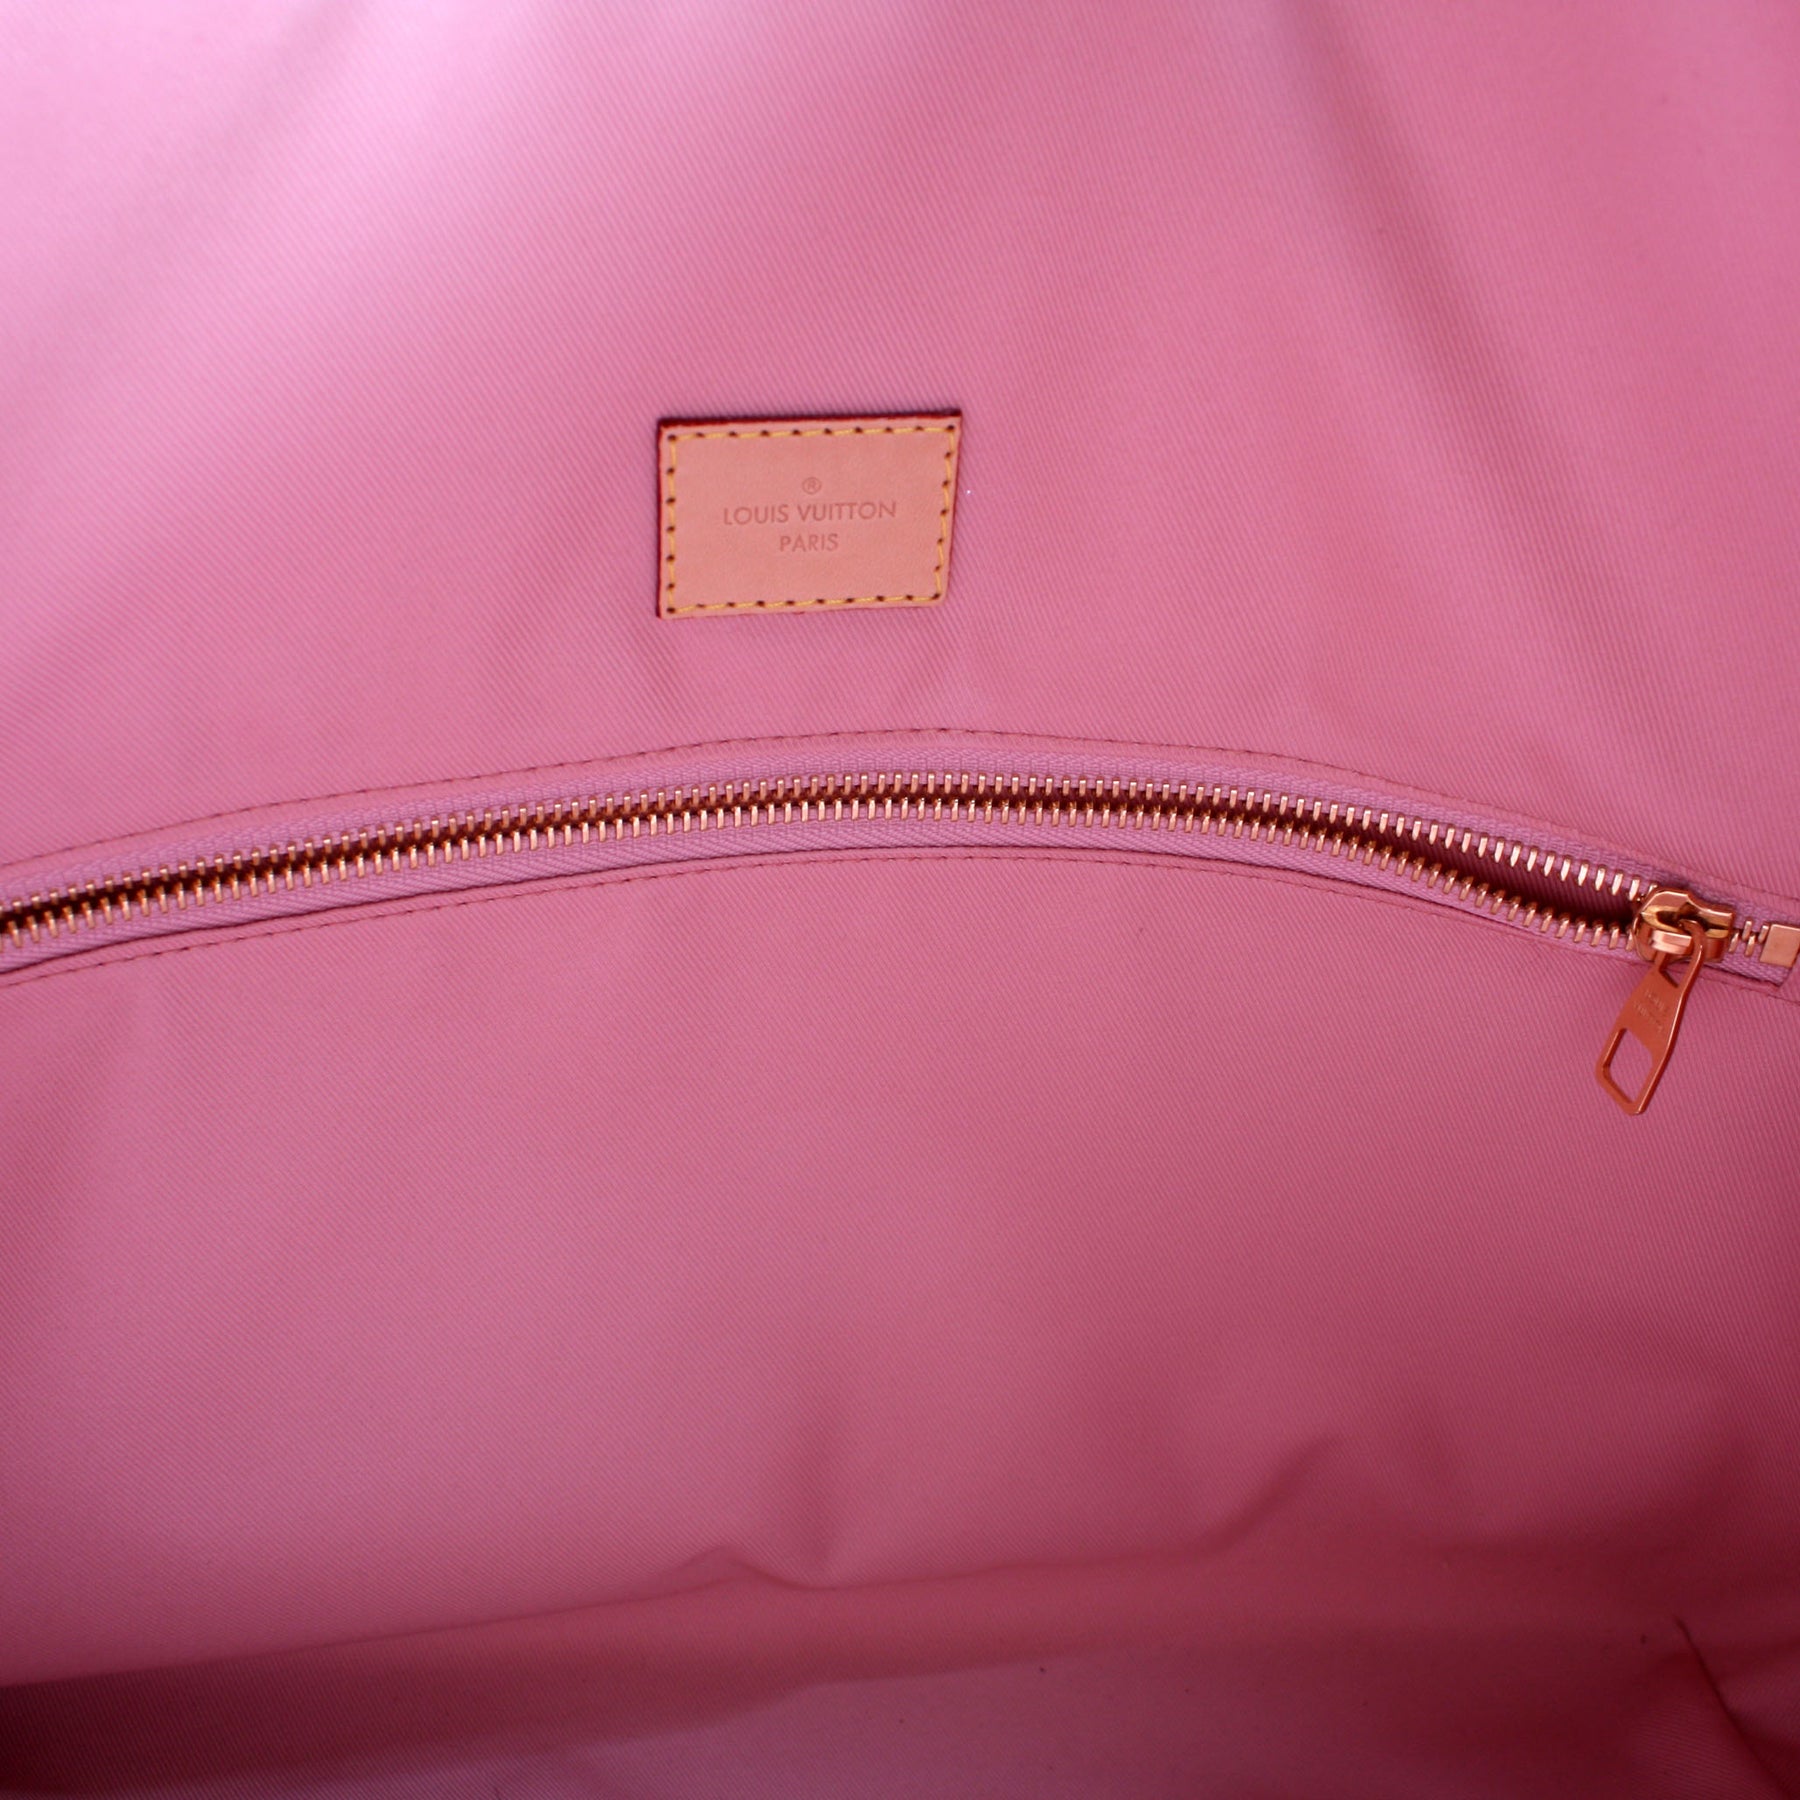 Louis Vuitton Graceful Mm Rose Ballerine Pink Interior White Damier Az -  MyDesignerly